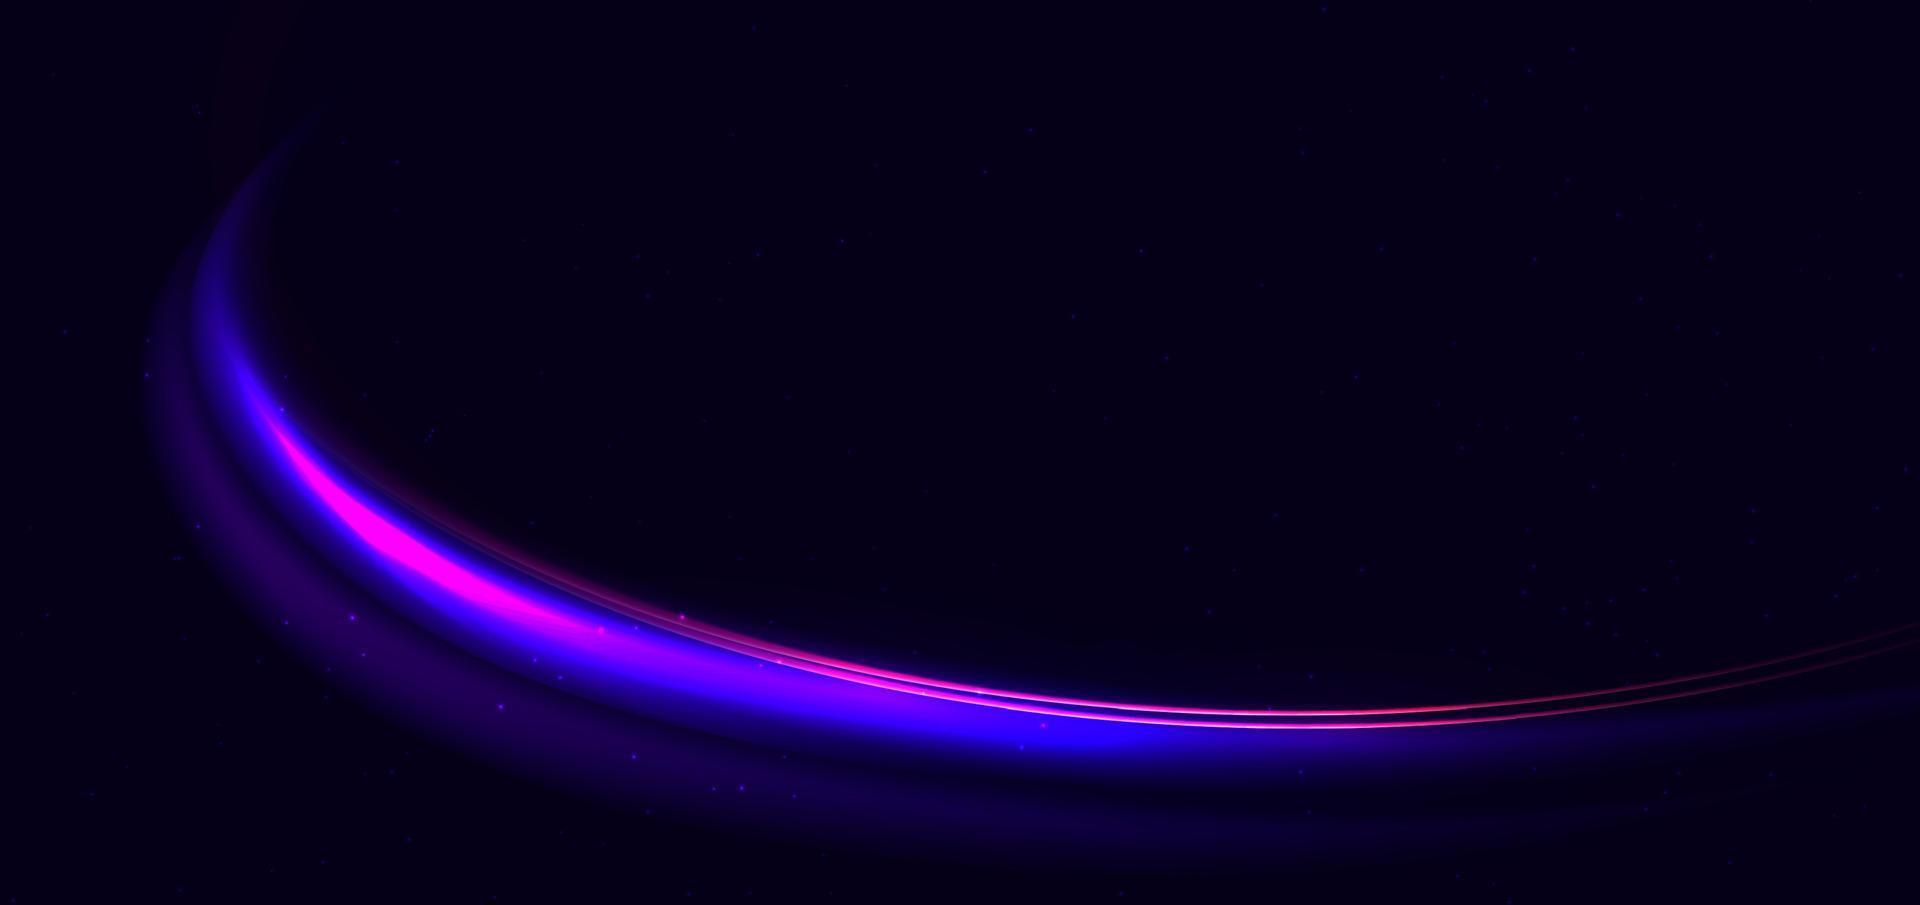 tecnología abstracta neón futurista curvado líneas de luz azul y rosa brillantes con efecto de desenfoque de movimiento de velocidad sobre fondo azul oscuro. vector